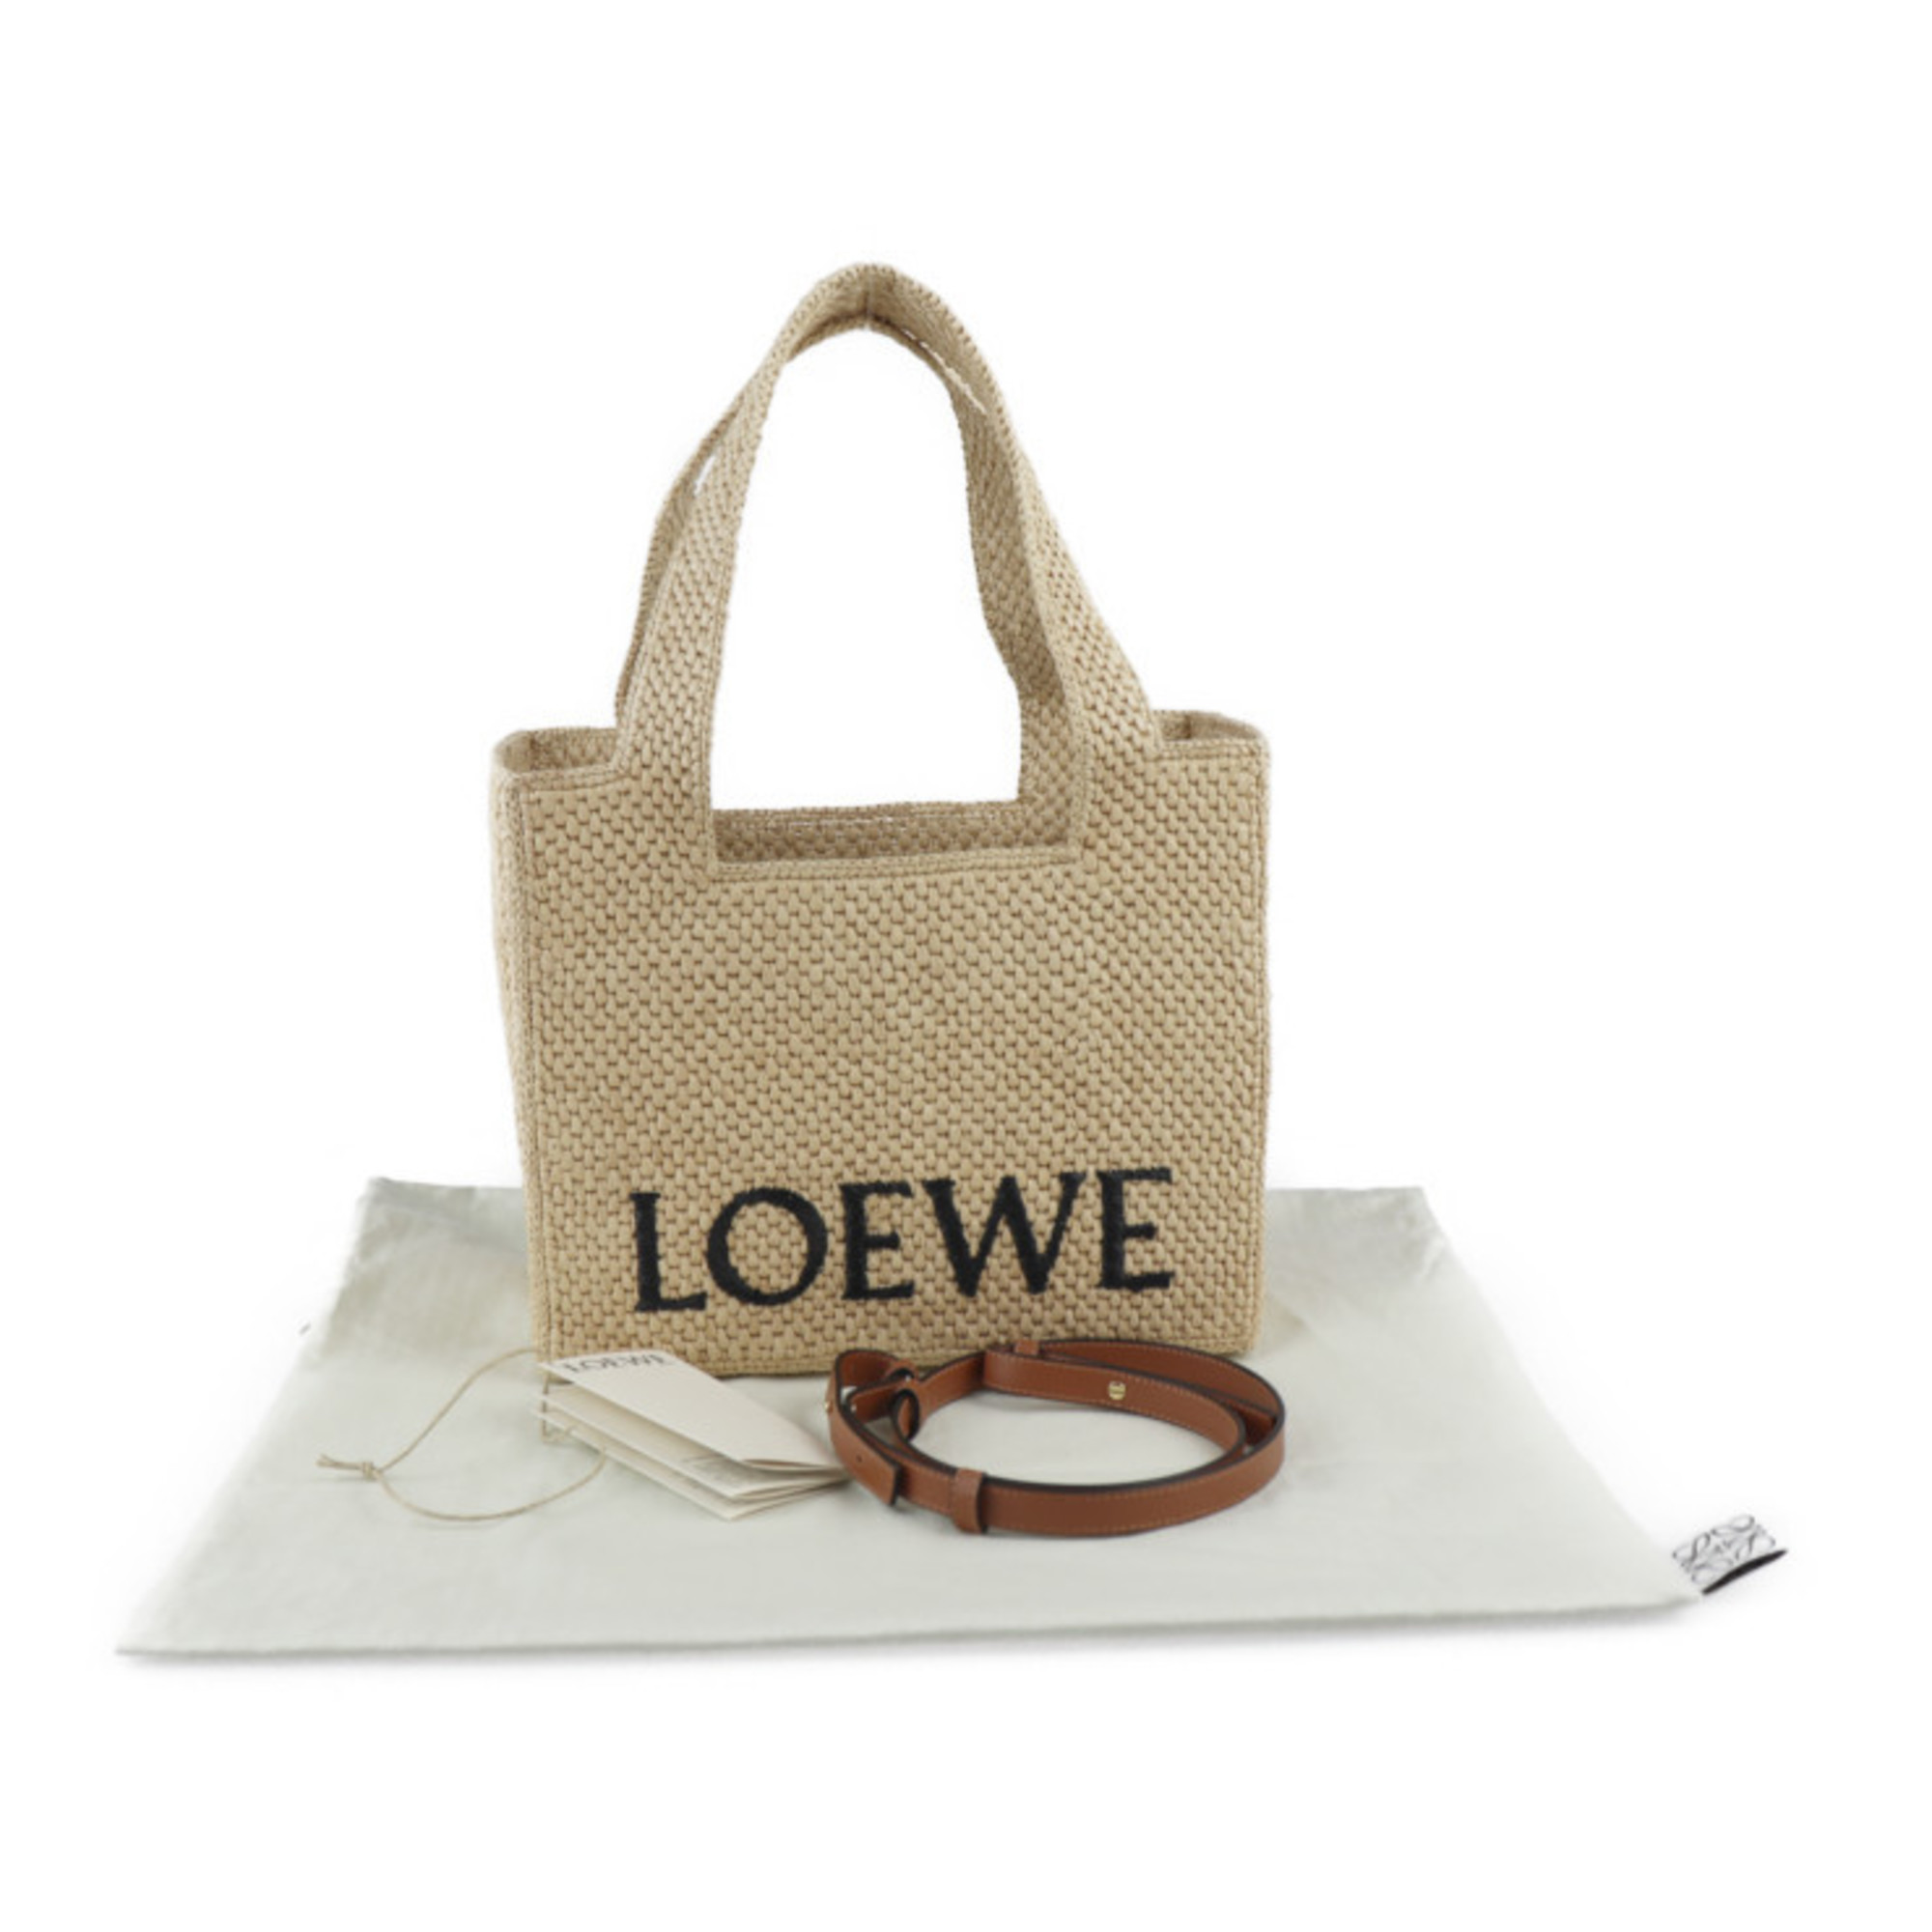 LOEWE Loewe font tote medium handbag A685B61X05 raffia natural 2WAY shoulder bag